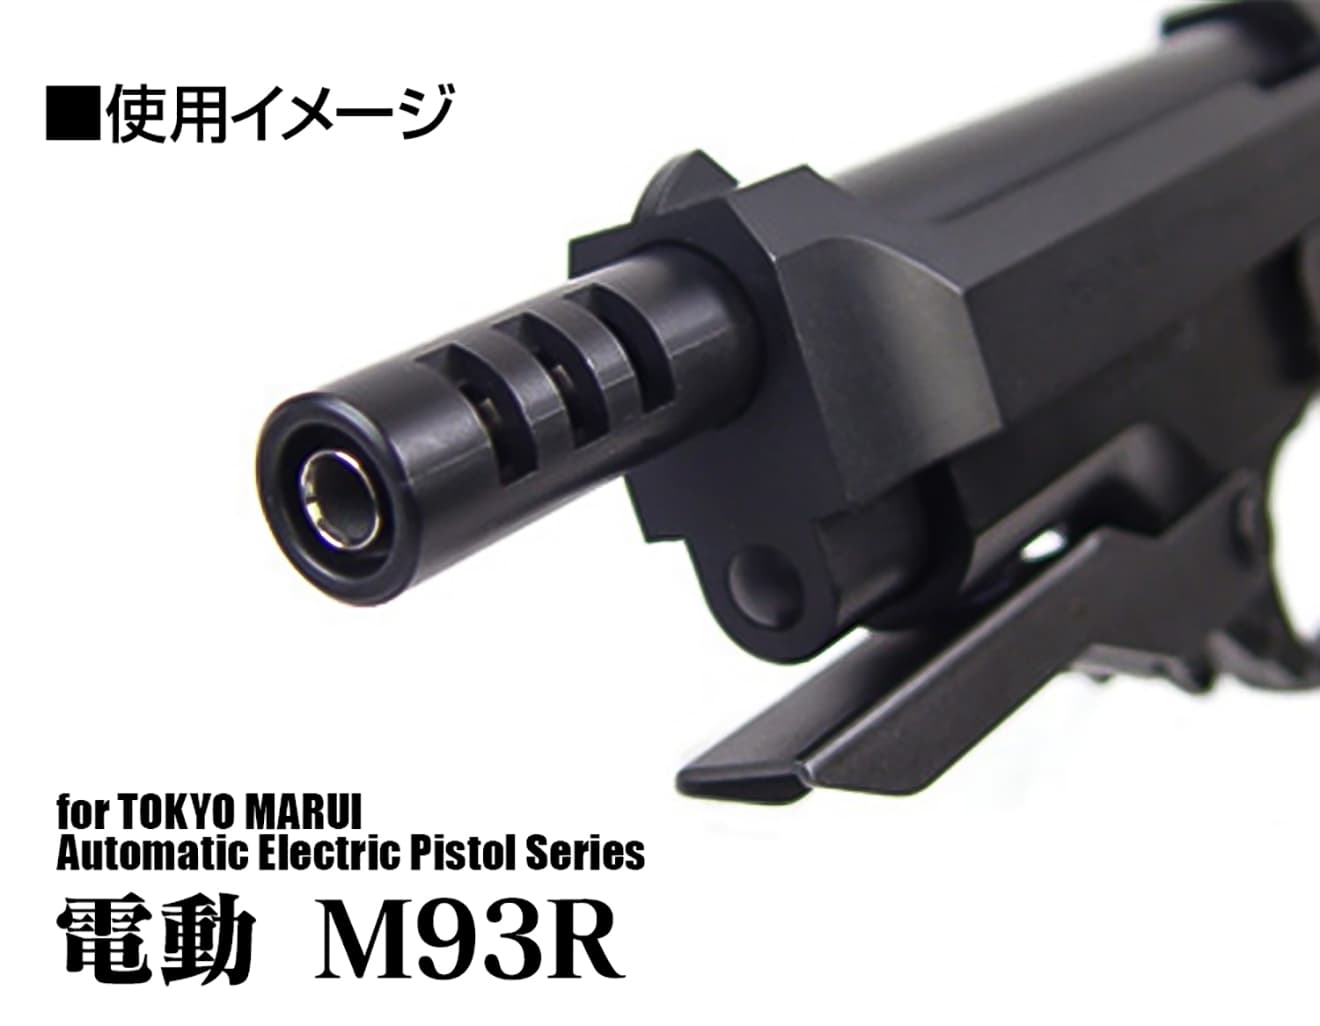 LayLax NINE BALL ハンドガンバレル(Φ6.03インナーバレル) ロング 168mm 東京マルイ 電動ハンドガン G18C&M93R共用